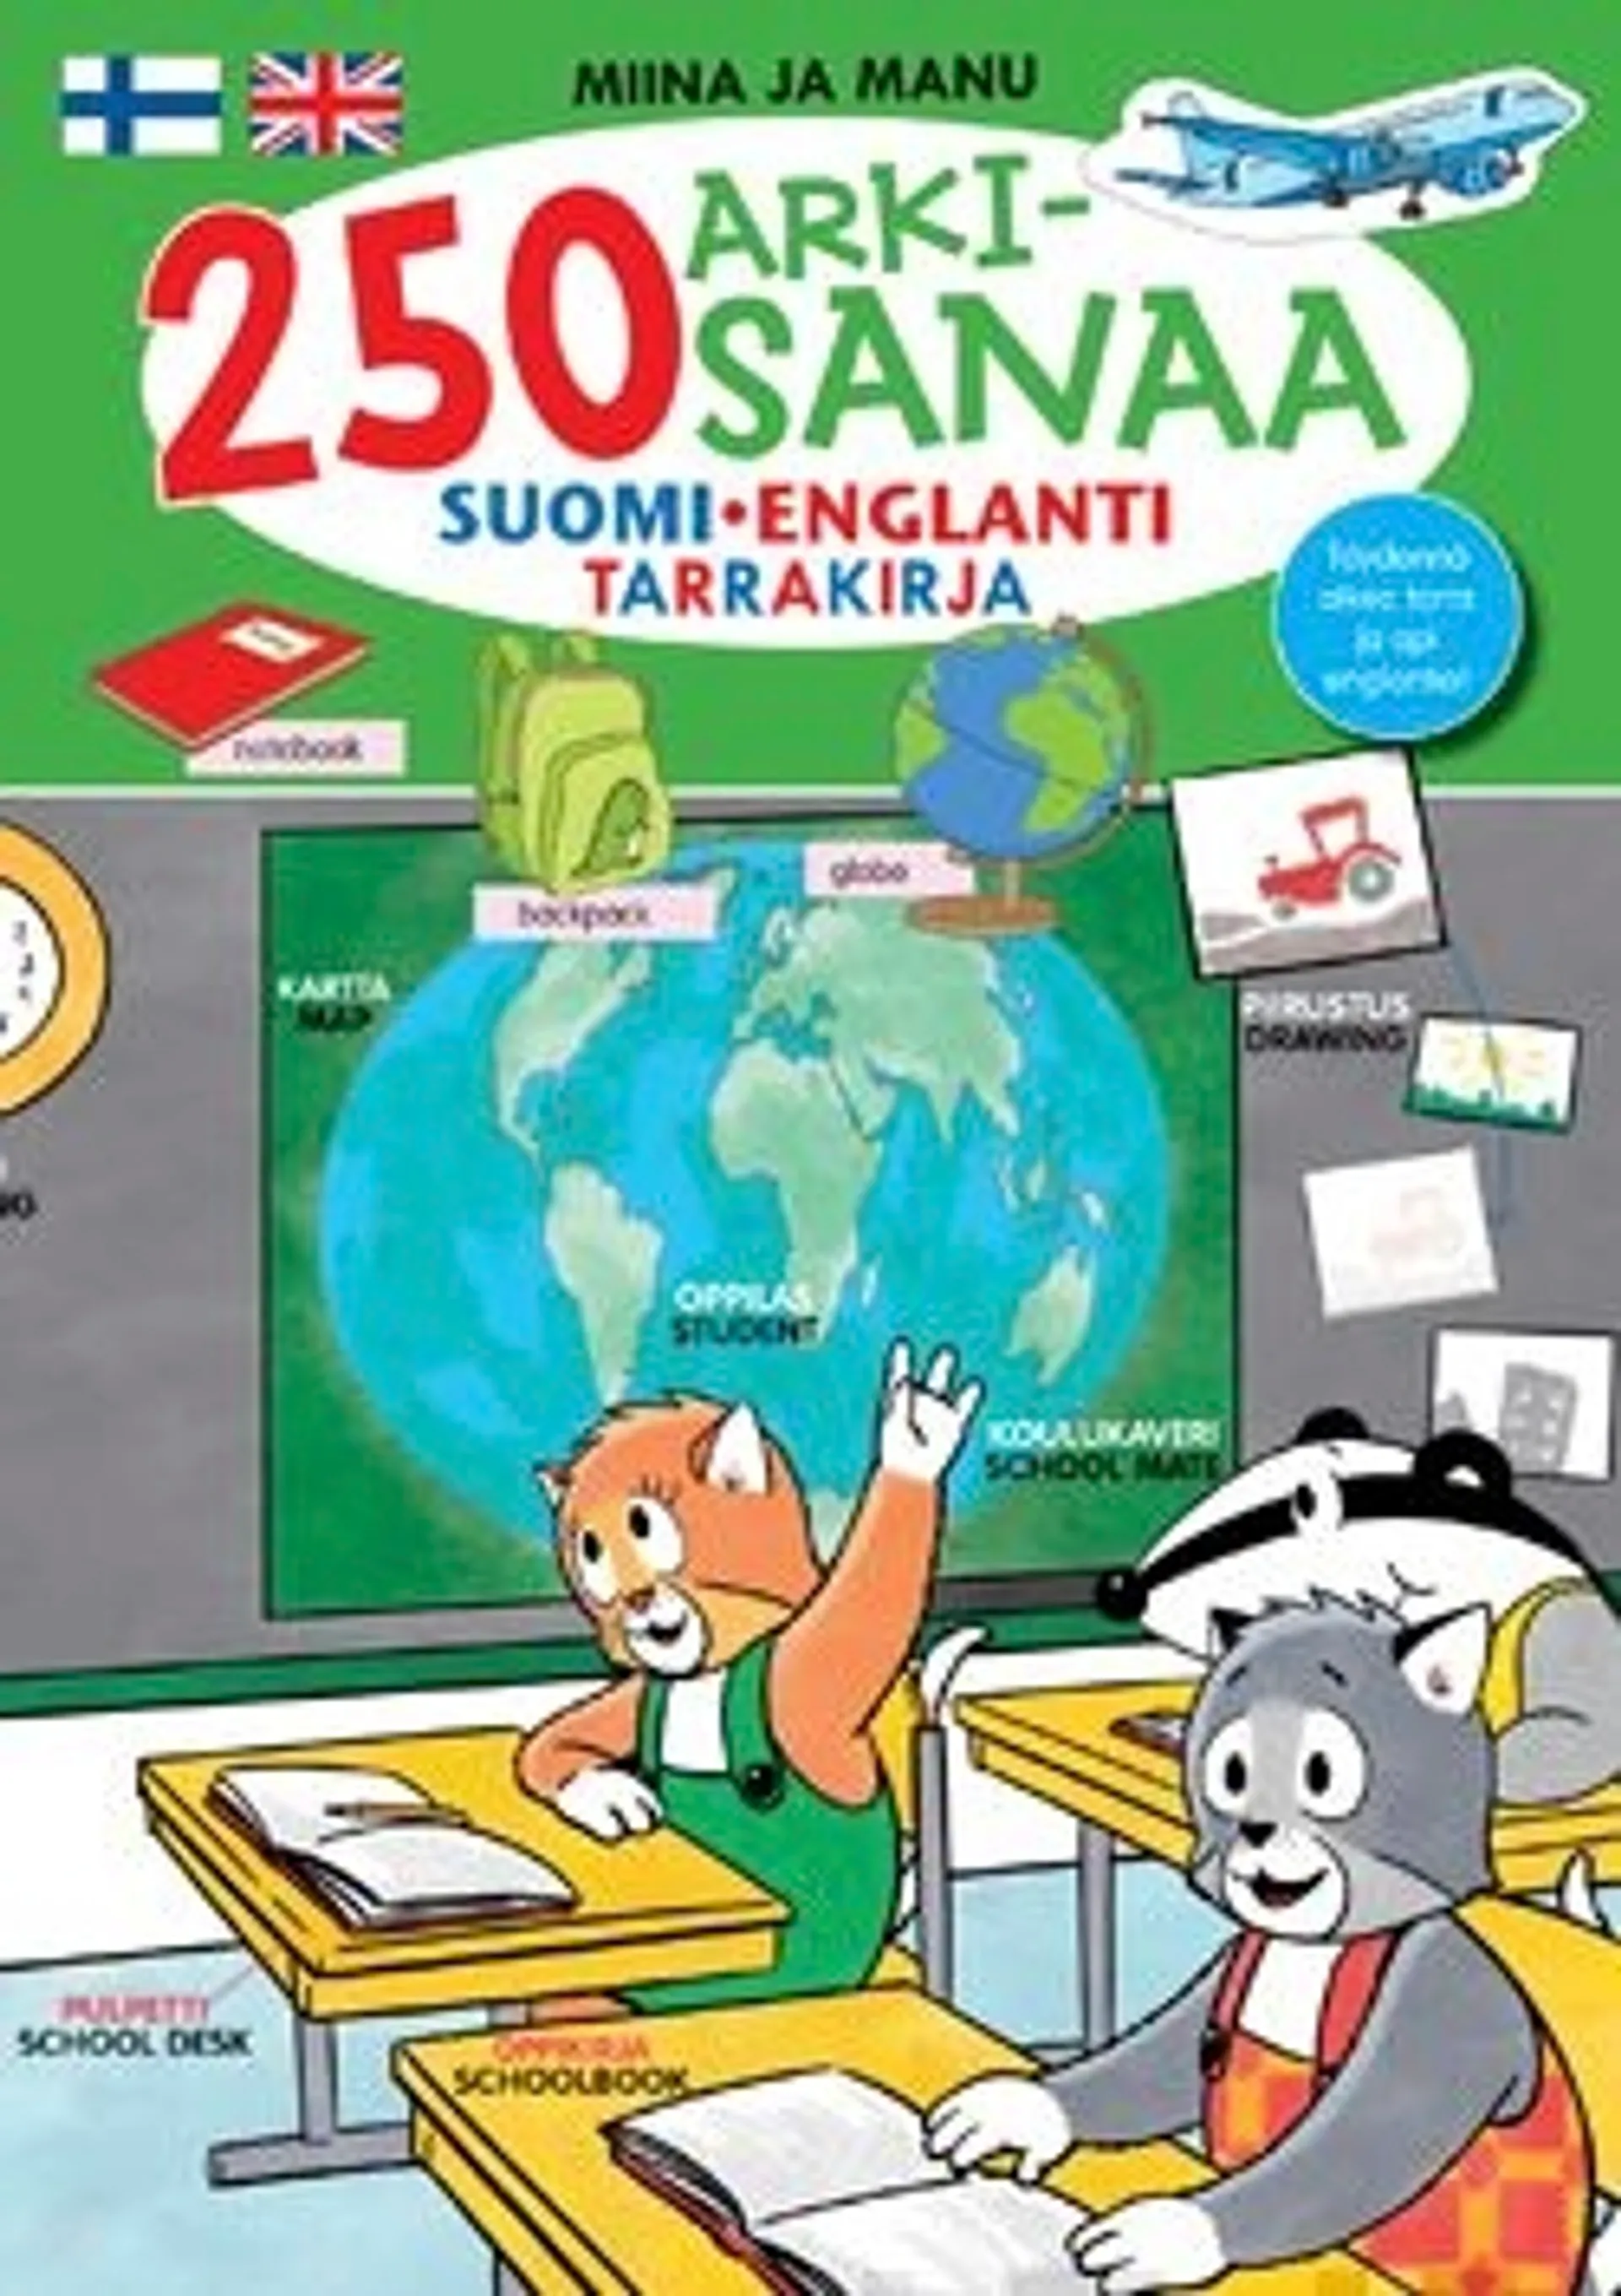 Miina ja Manu 250 arkisanaa - Suomi-englanti tarrakirja